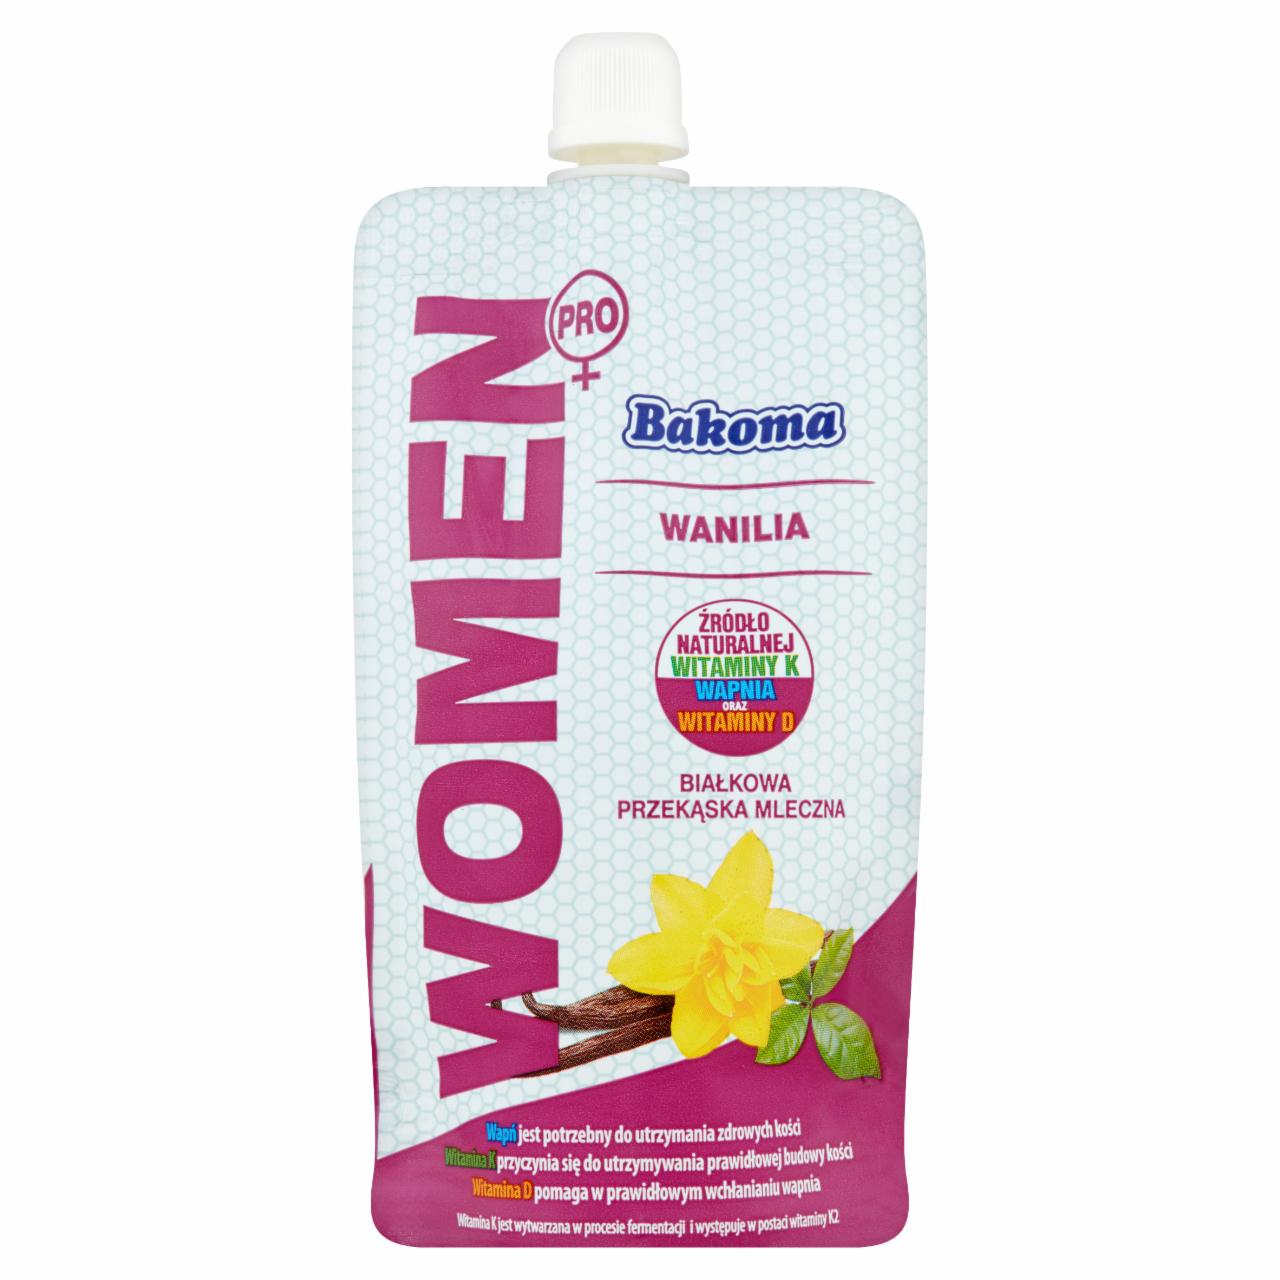 Zdjęcia - Bakoma Women Pro Białkowa przekąska mleczna wanilia 120 g